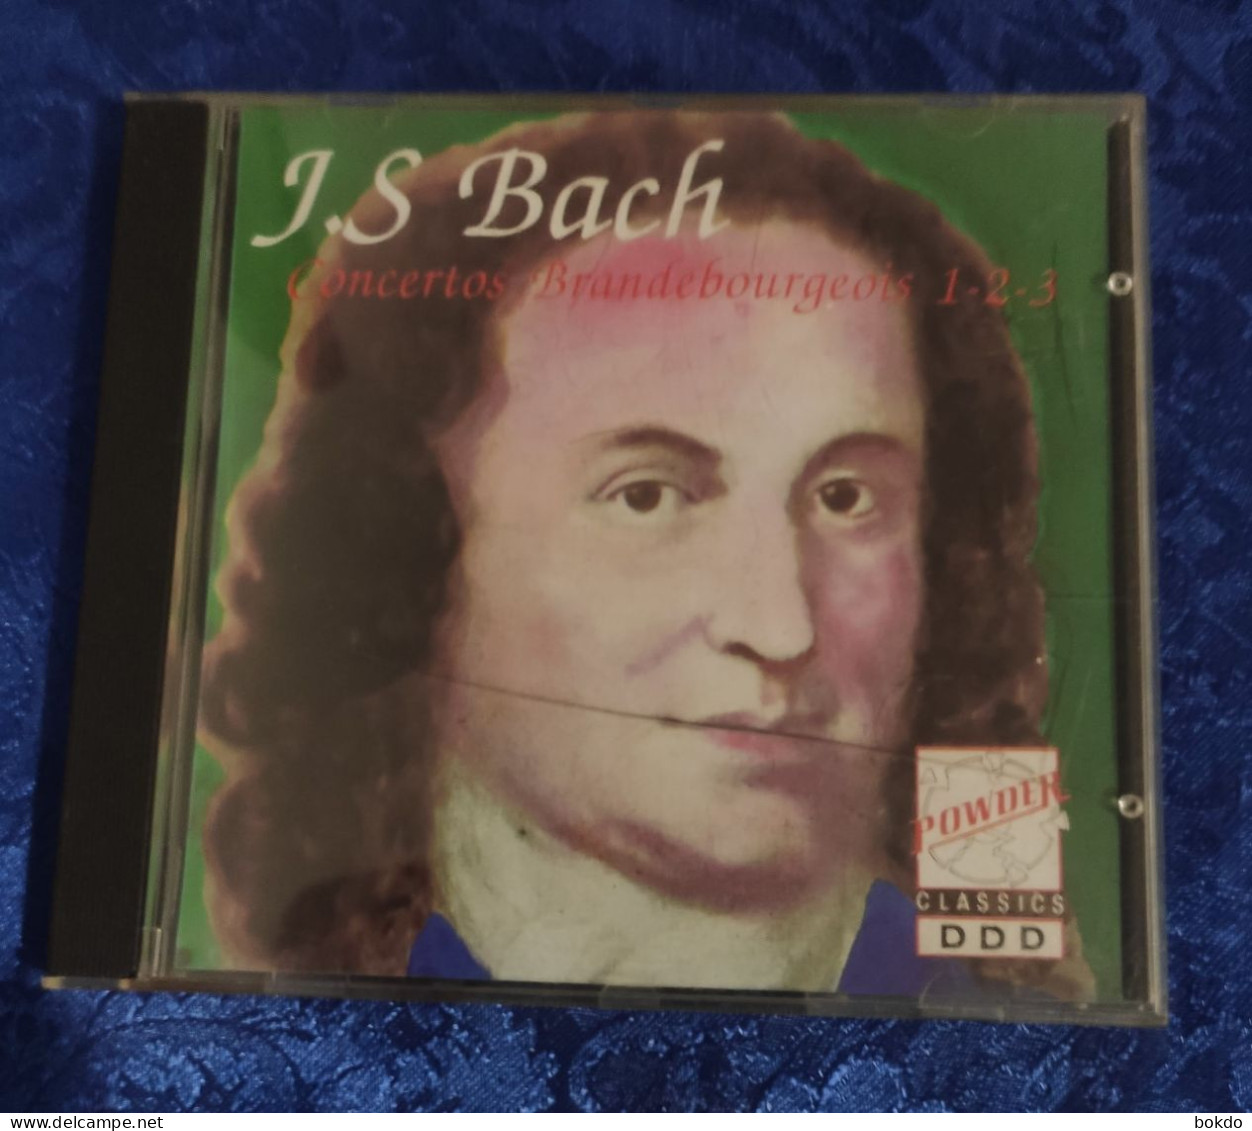 J.S. BACH - Concertos - Classical